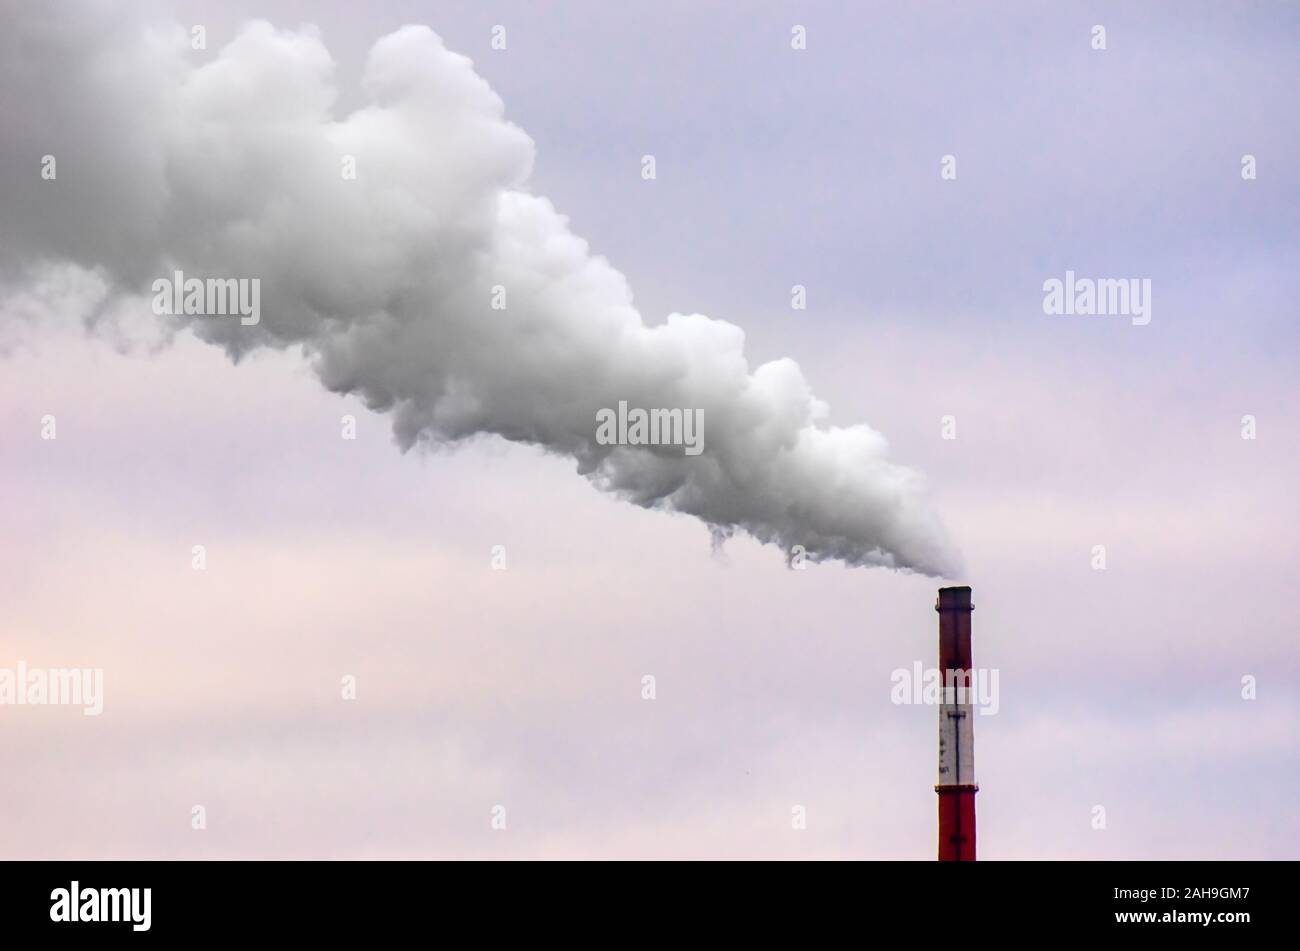 Fumar Tall chimenea industrial en un día nublado con viento. Foto de stock